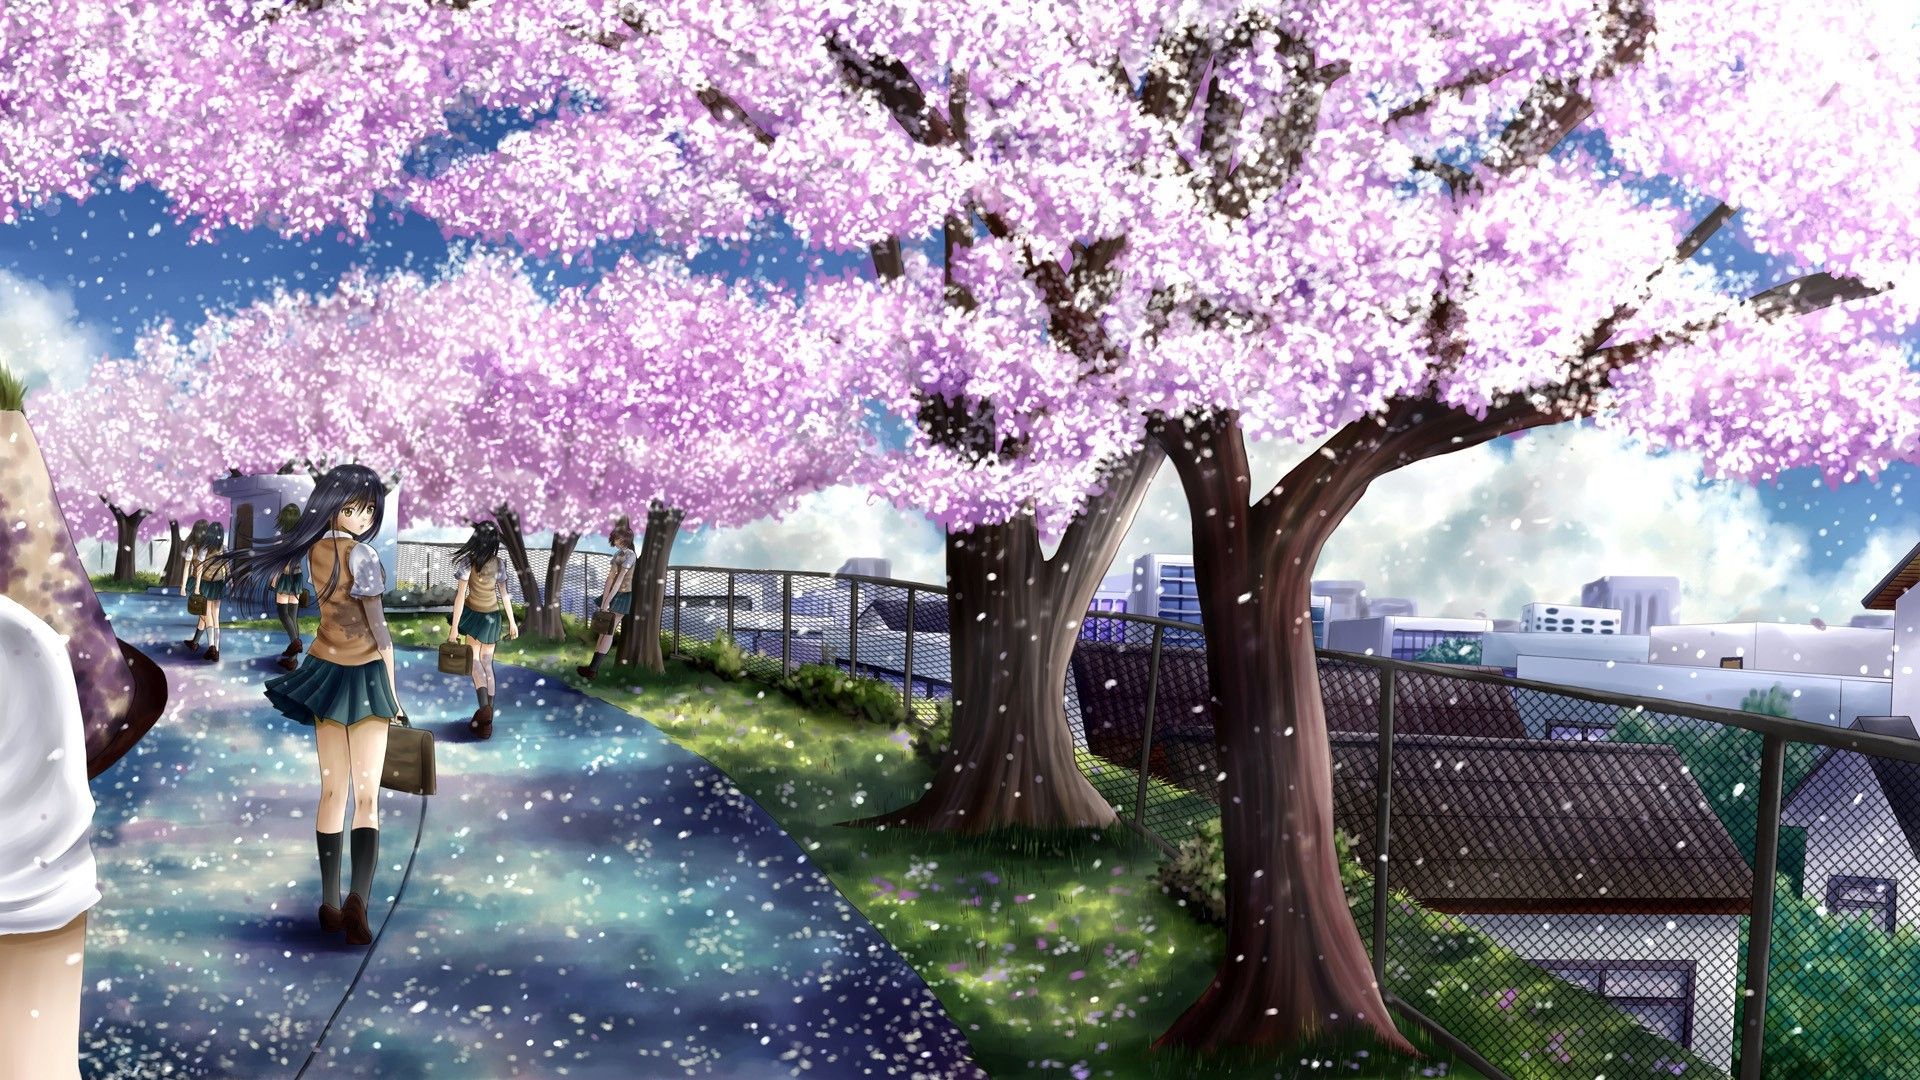 Anime Cherry Blossom Desktop Wallpaper